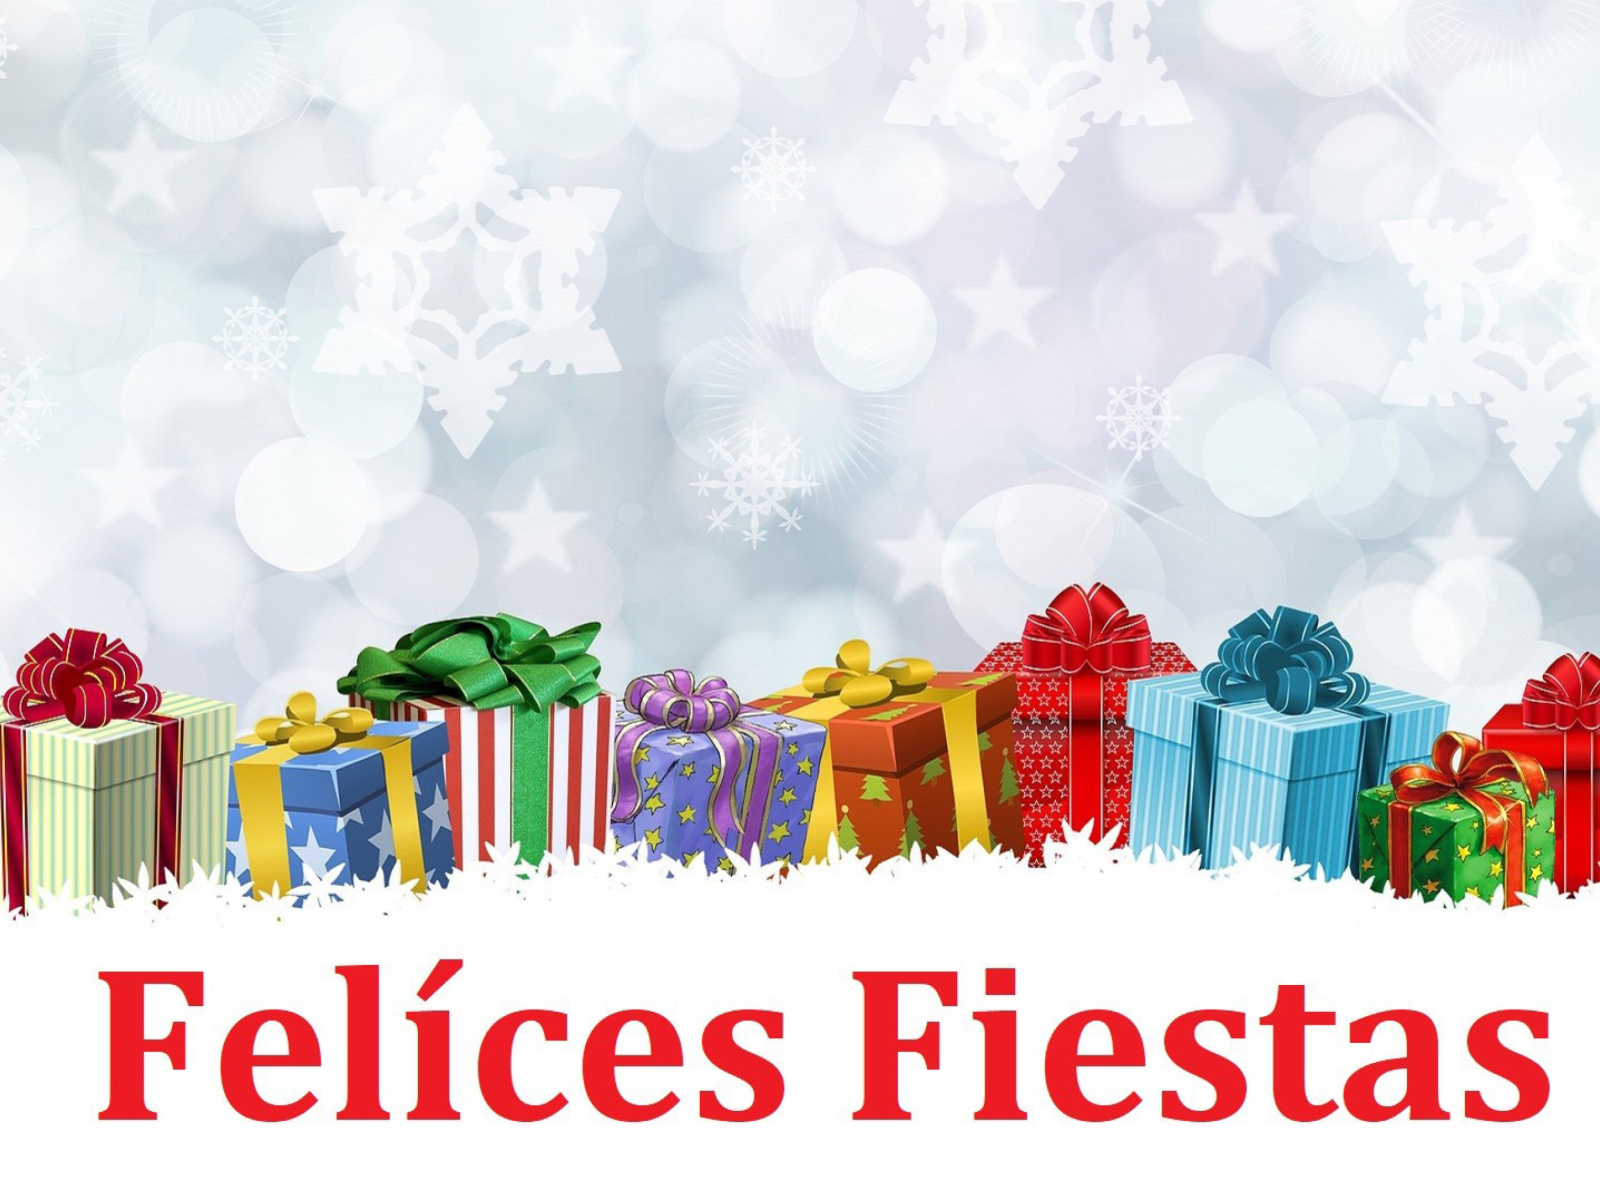 Обои Felices Fiestas 1600x1200